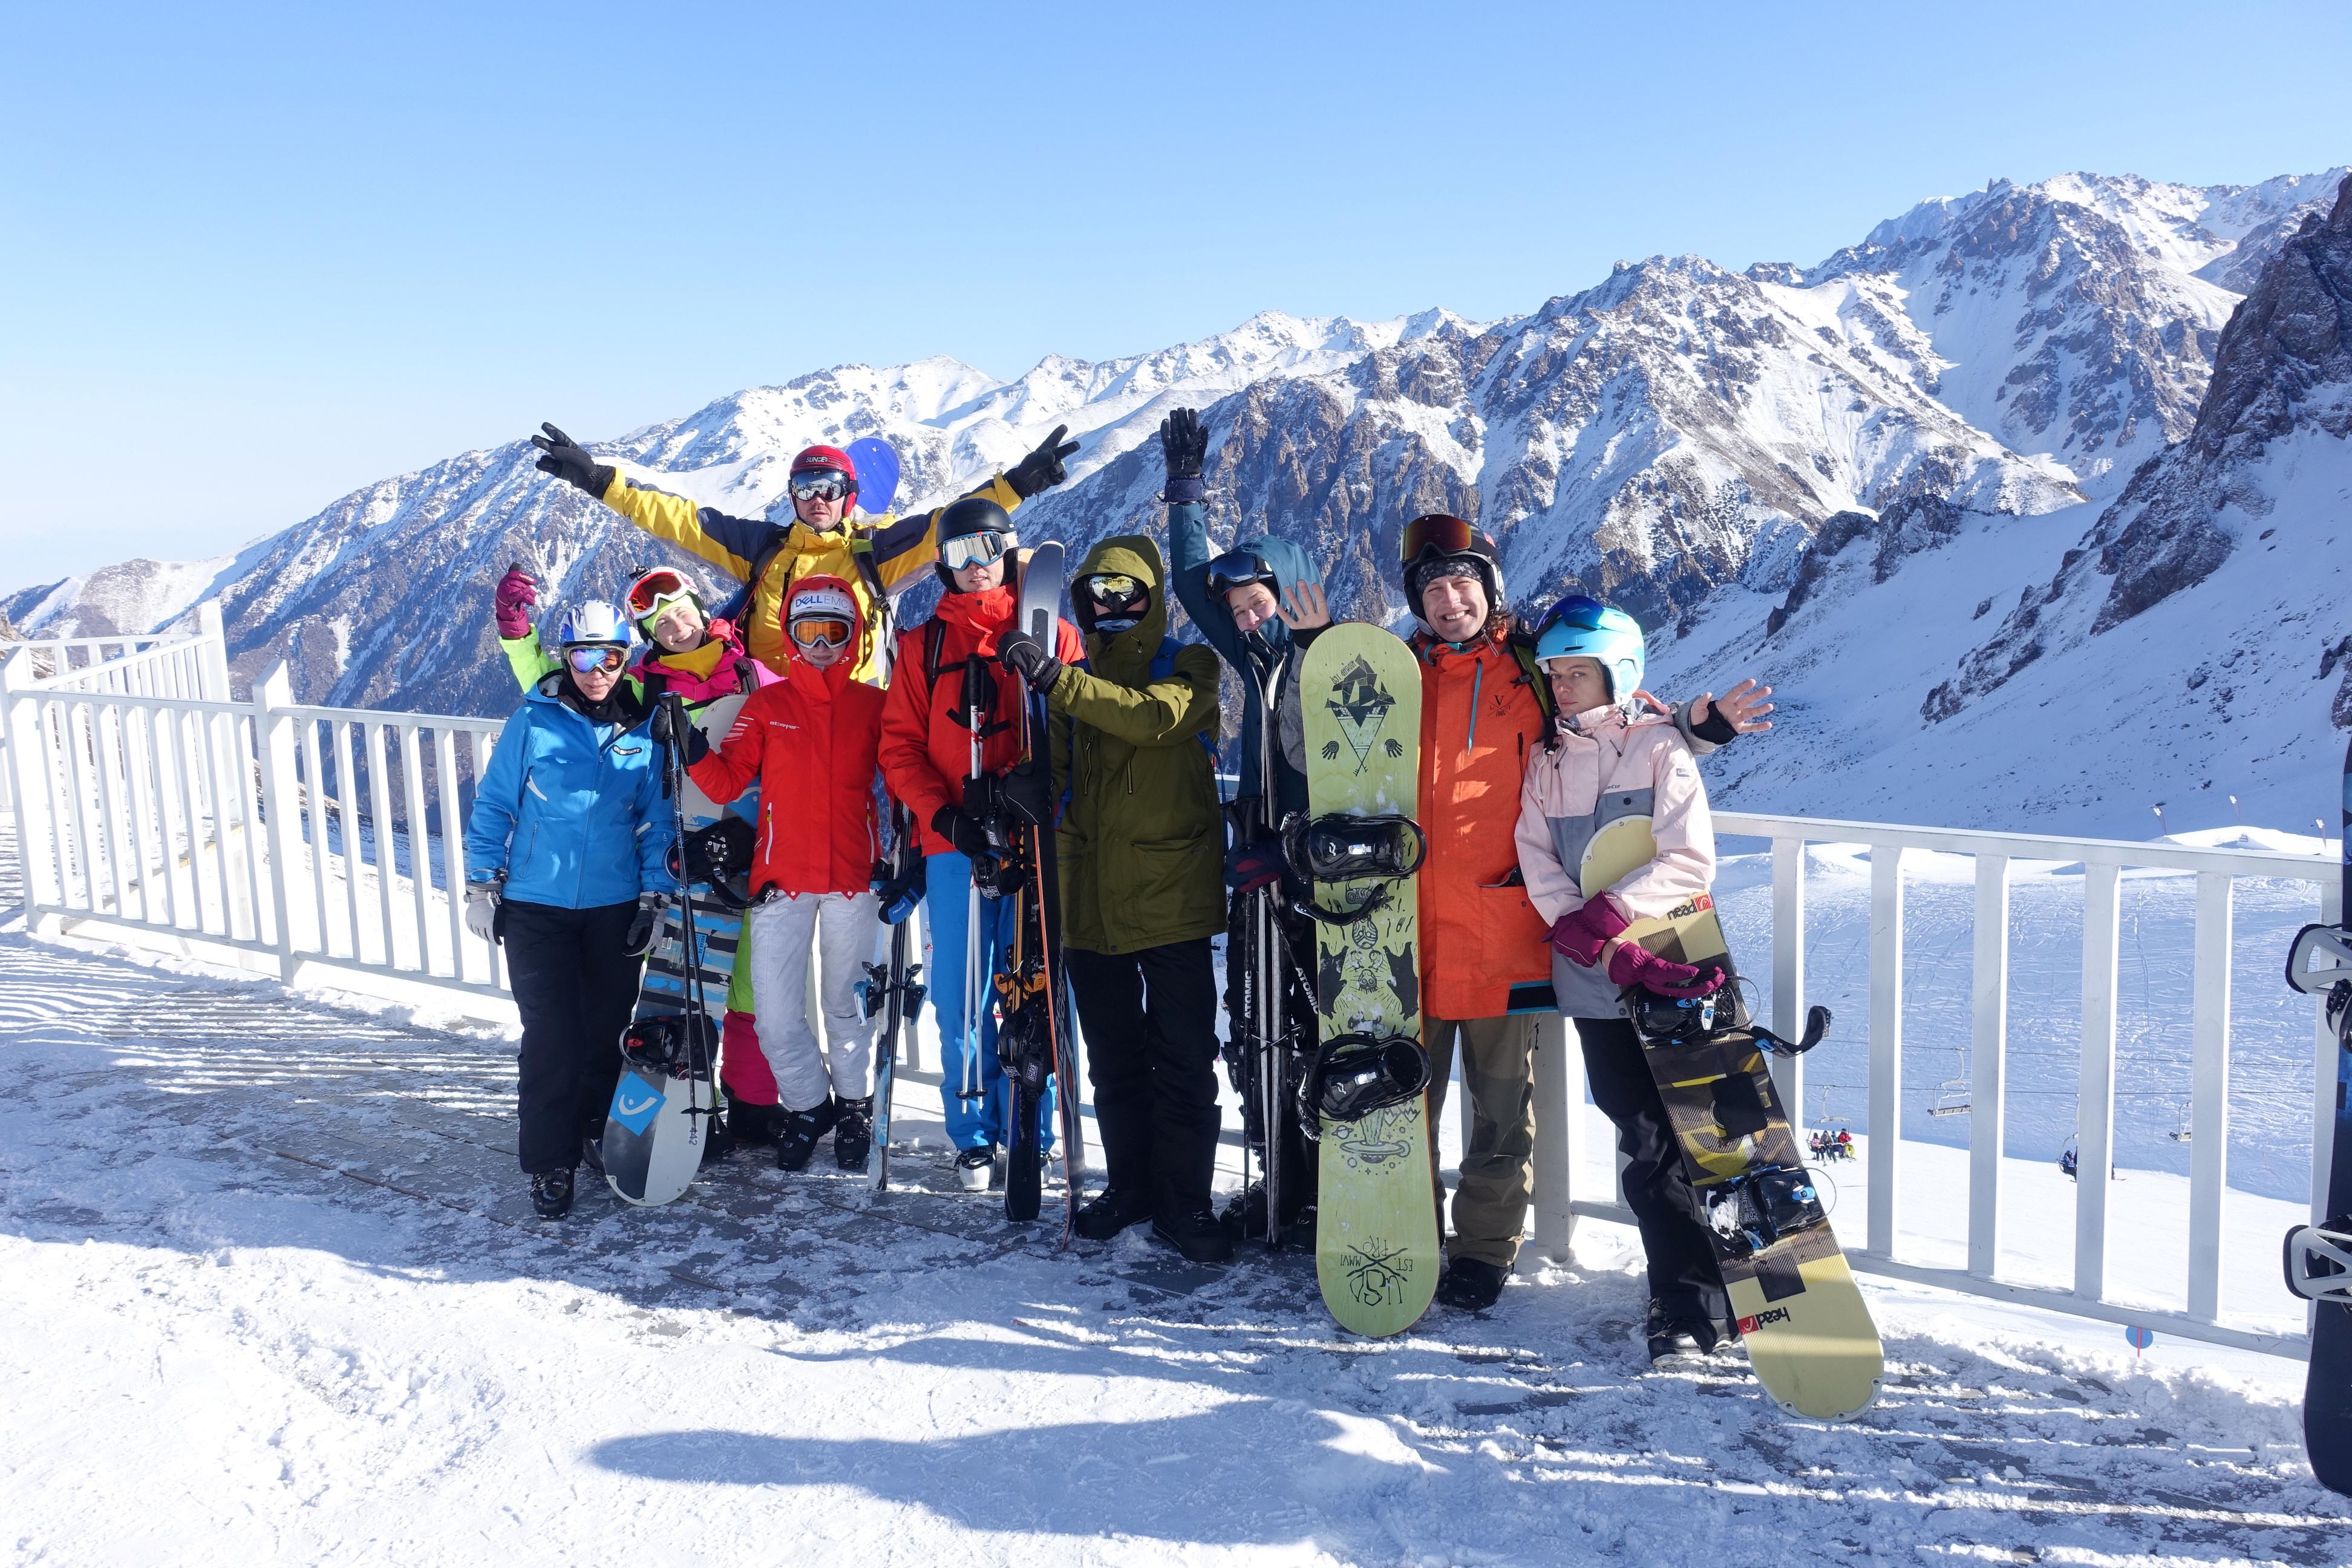 ски-выезде в горах Казахстана